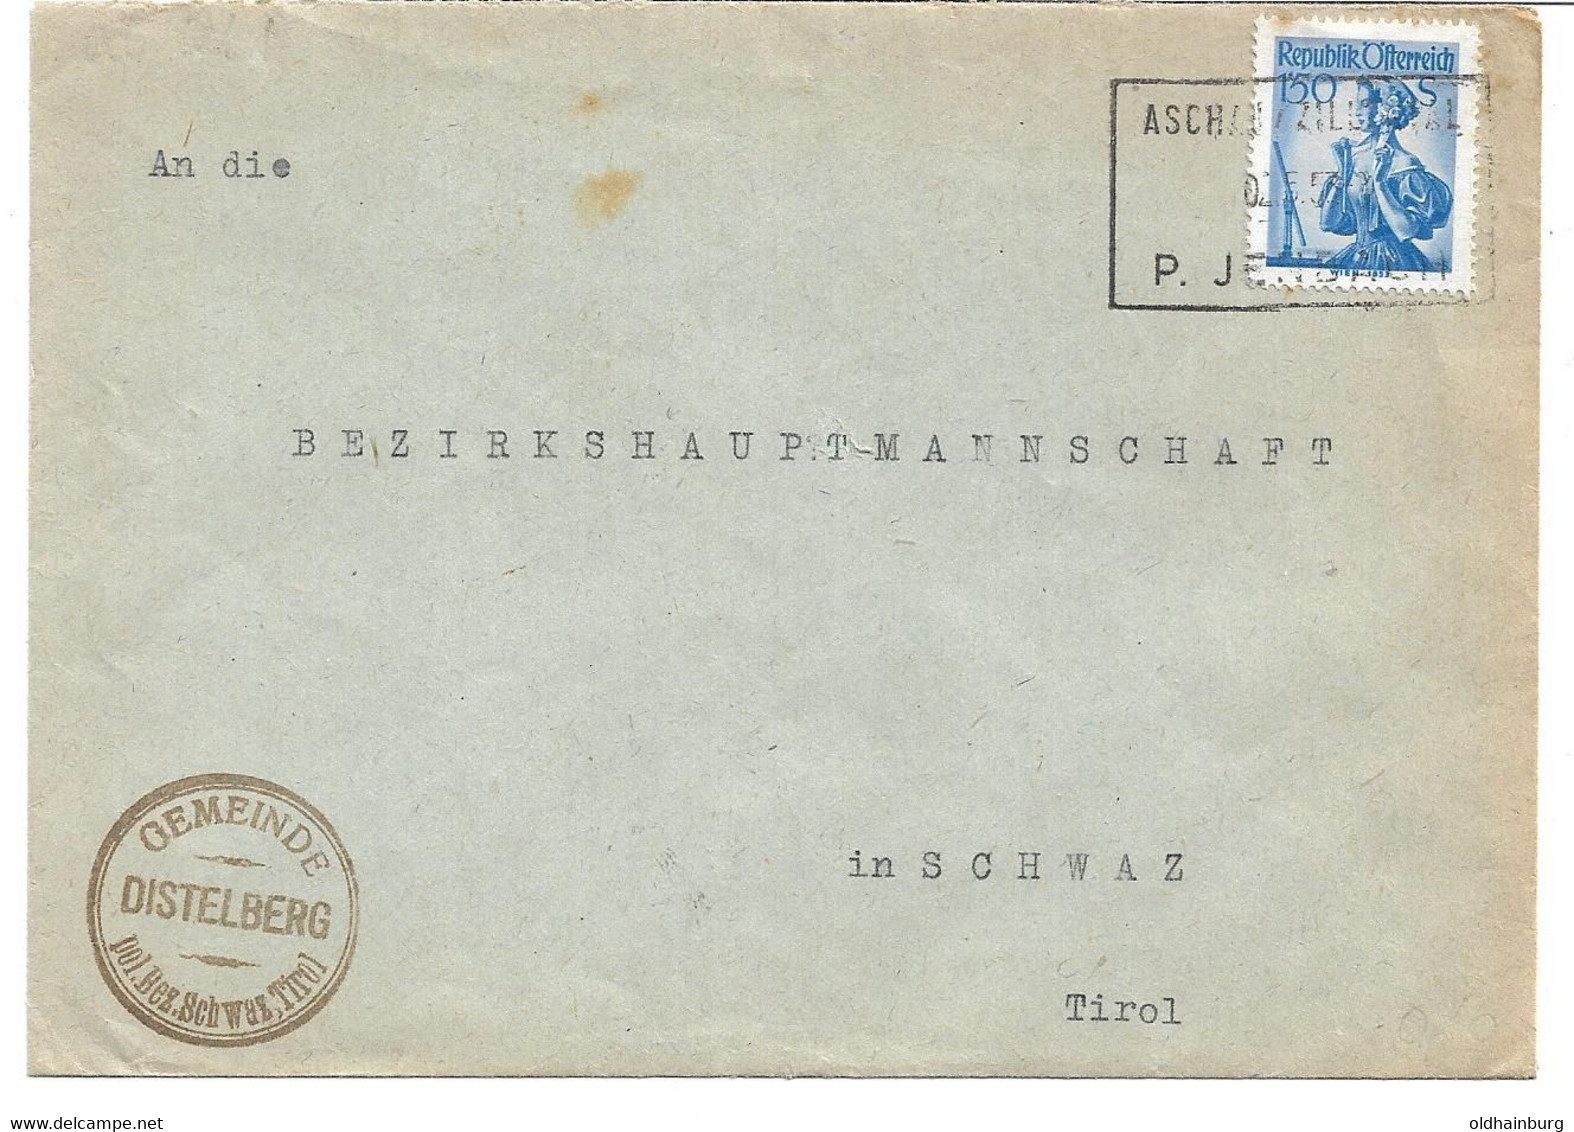 1851c: Heimatsammler Briefbeleg Der Gemeinde Distelberg, Postablagenstempel Jenbach 1953 - Jenbach